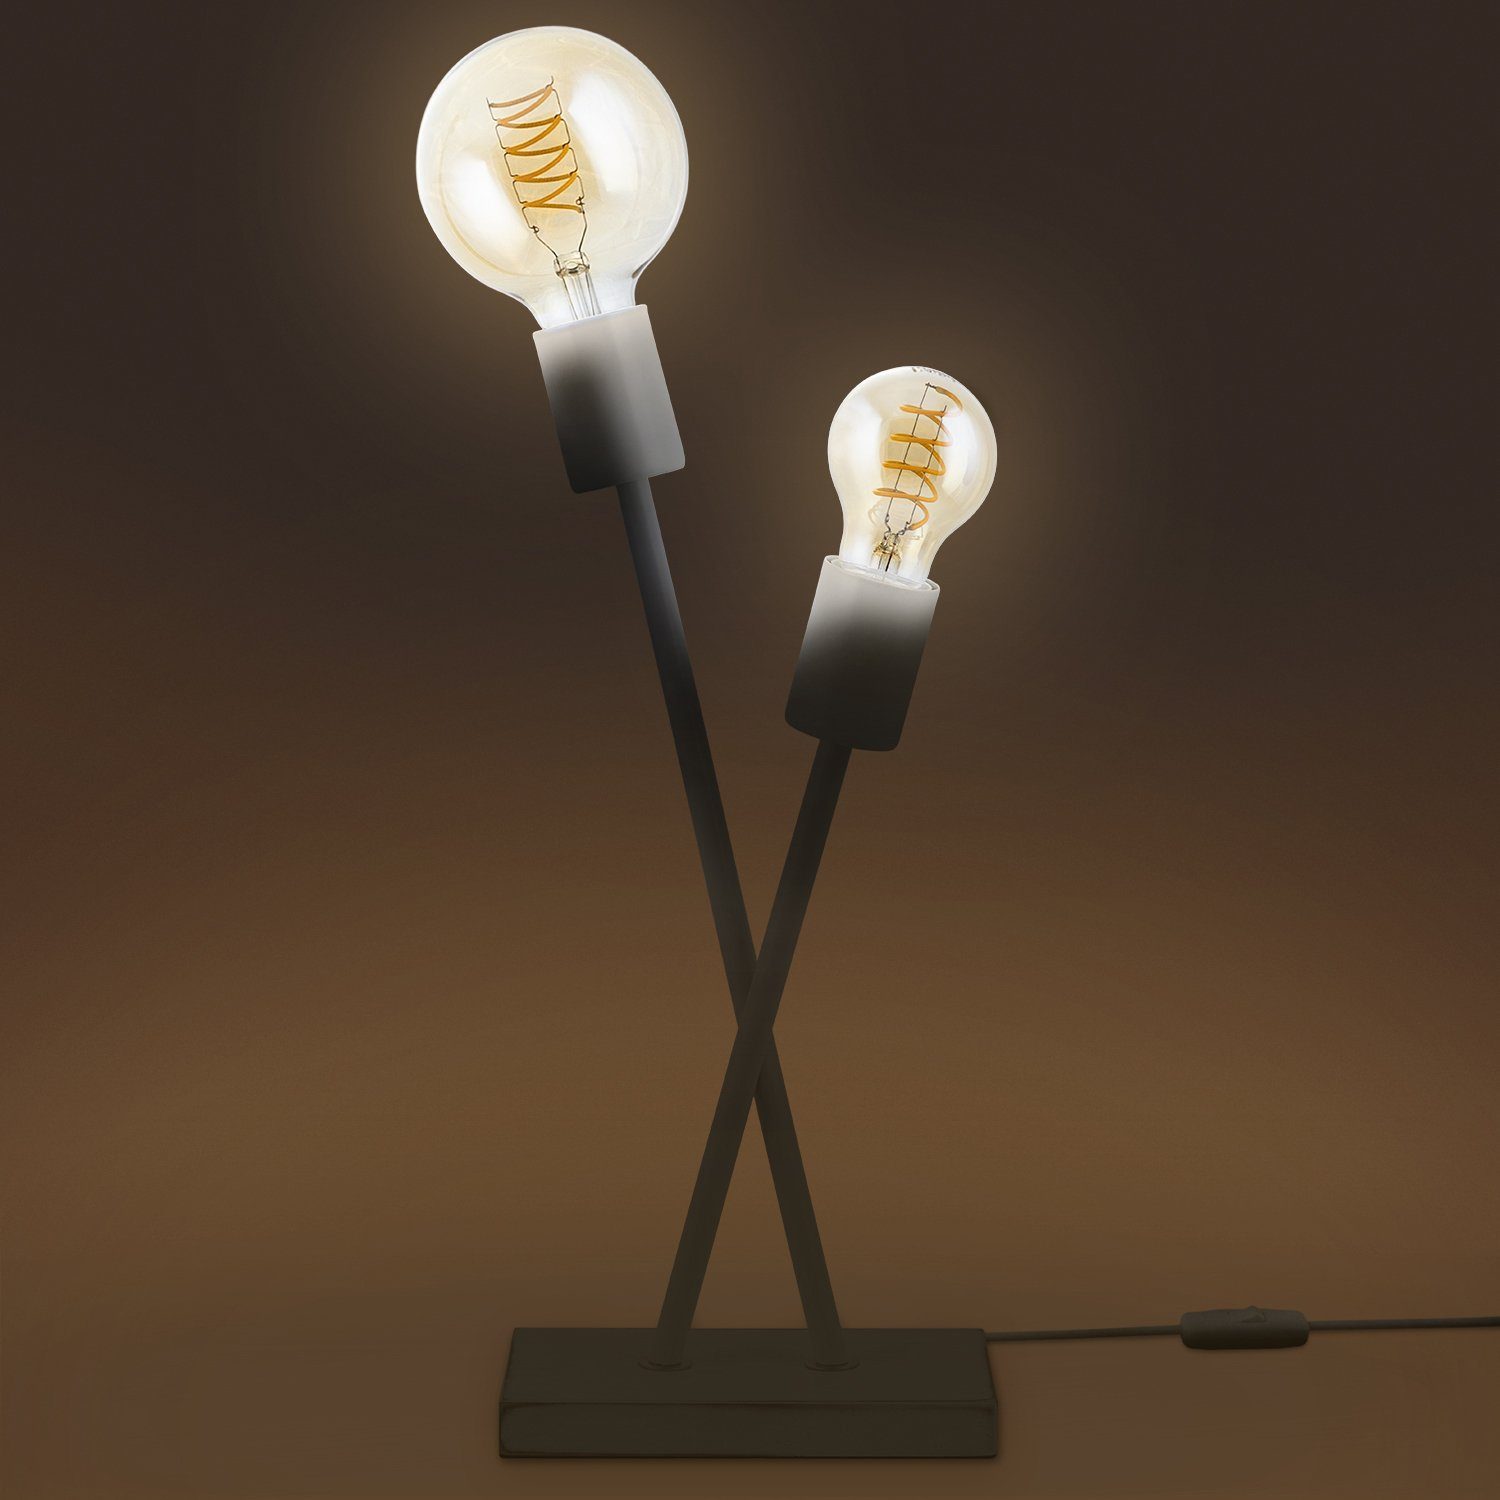 Paco Home Tischleuchte IKS, ohne Design Lampe Stehlampe LED Industrial E27 Retro Vintage Wohnzimmer Leuchtmittel